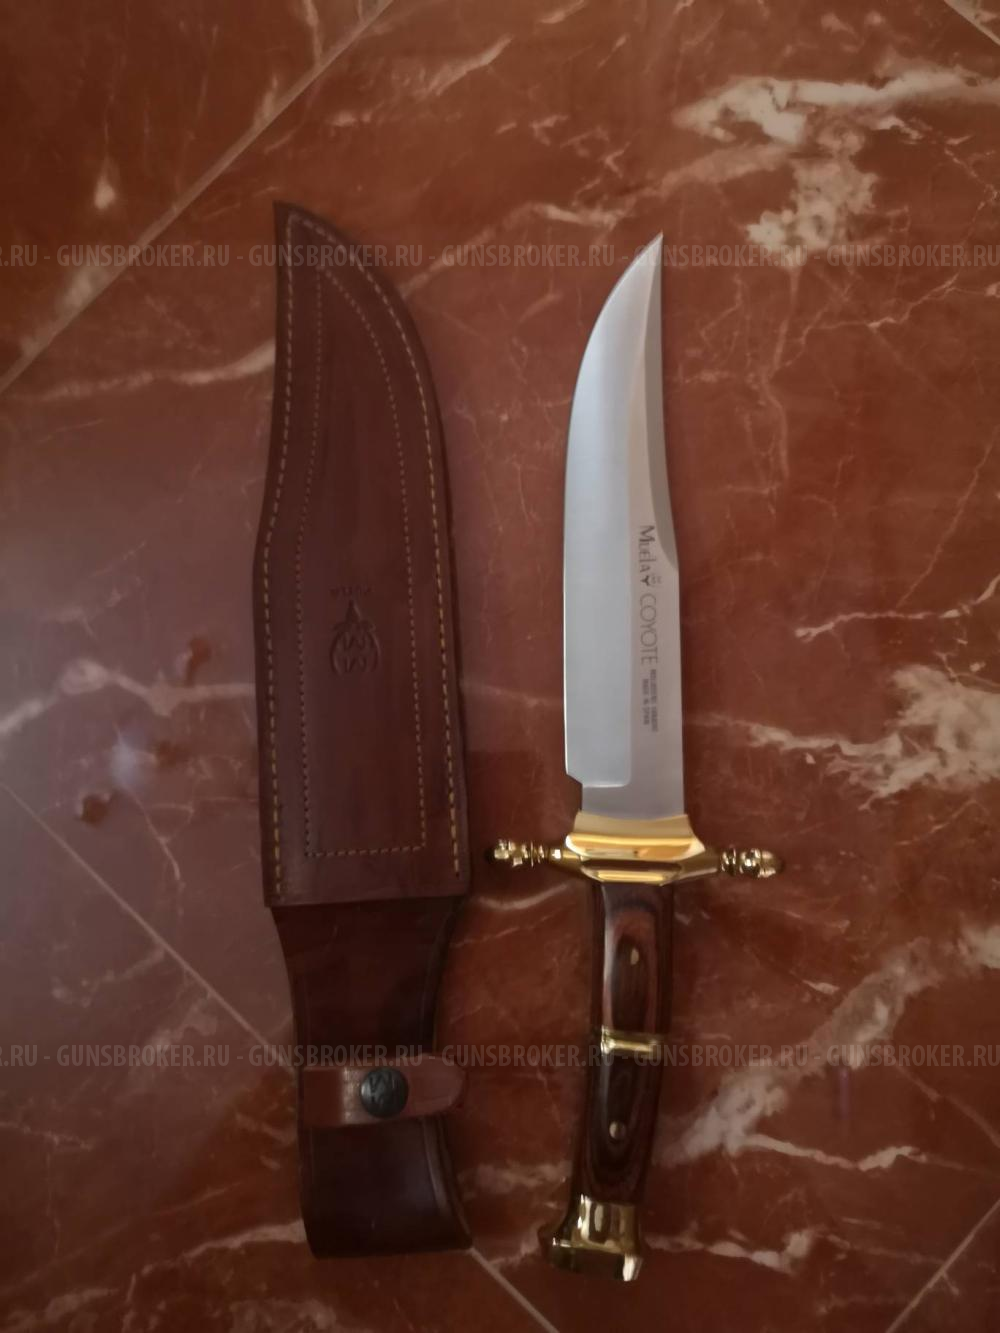 Ножи MUELA c Испанским колоритом